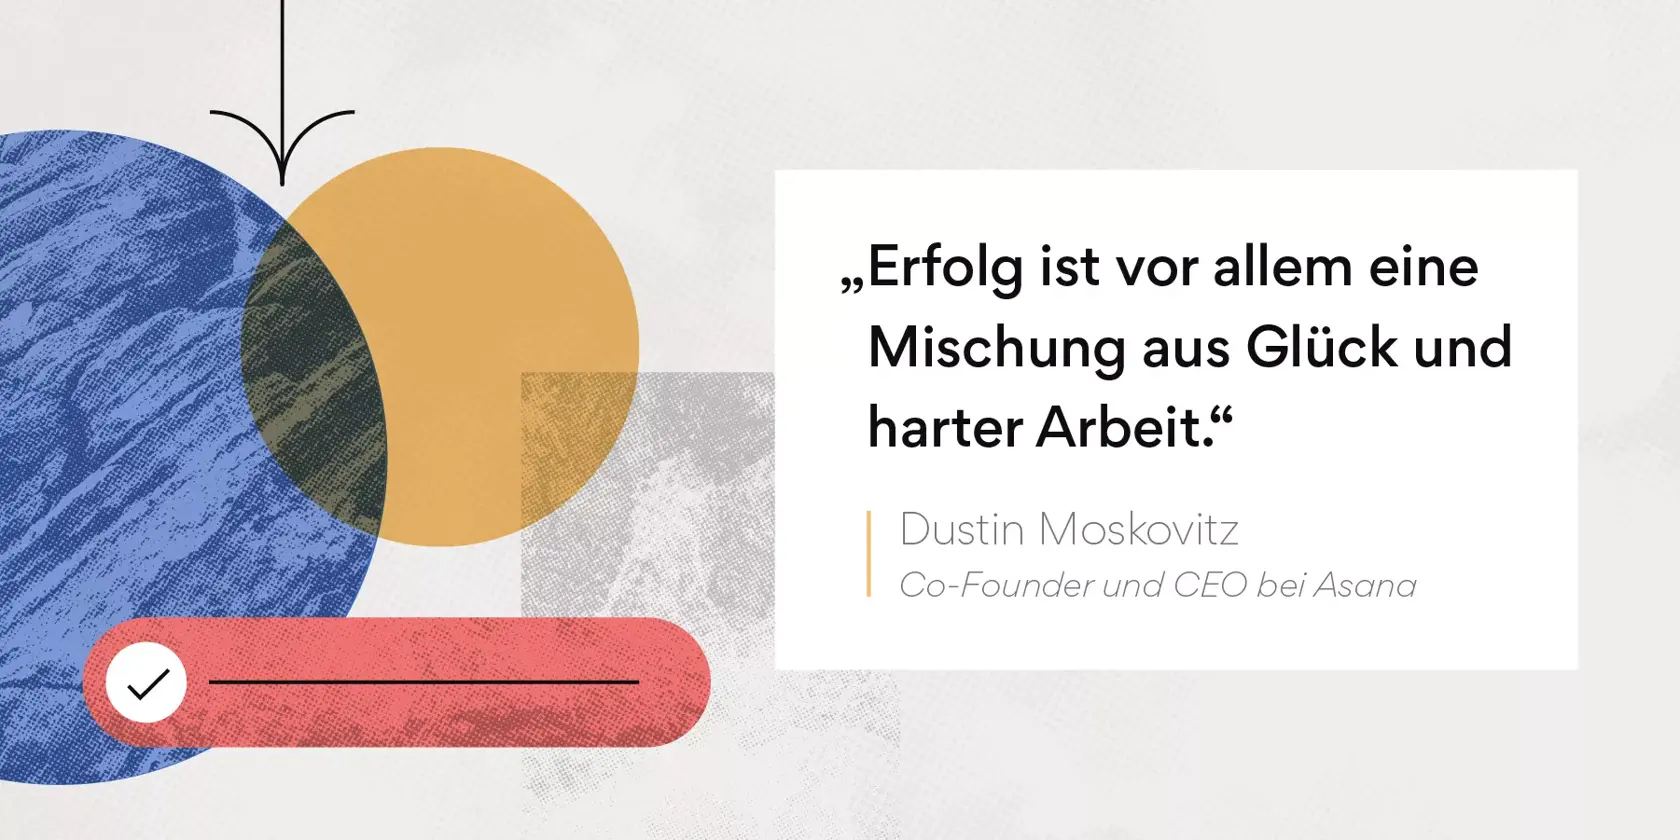 Motivierende Zitate für das Team – Zitat von Dustin Moskovitz